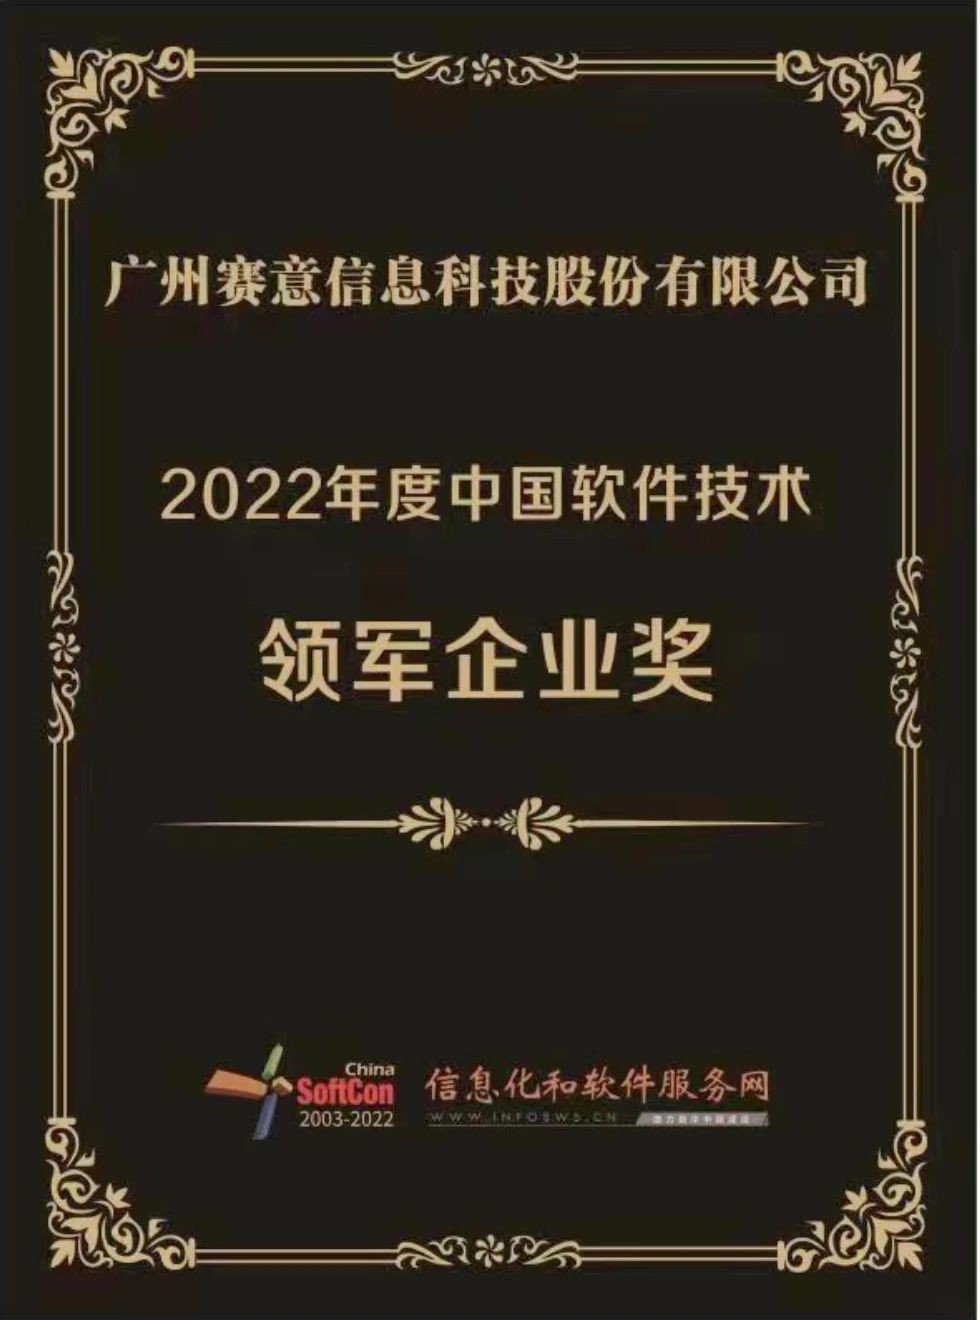 2022年度中国软件技术领军企业奖